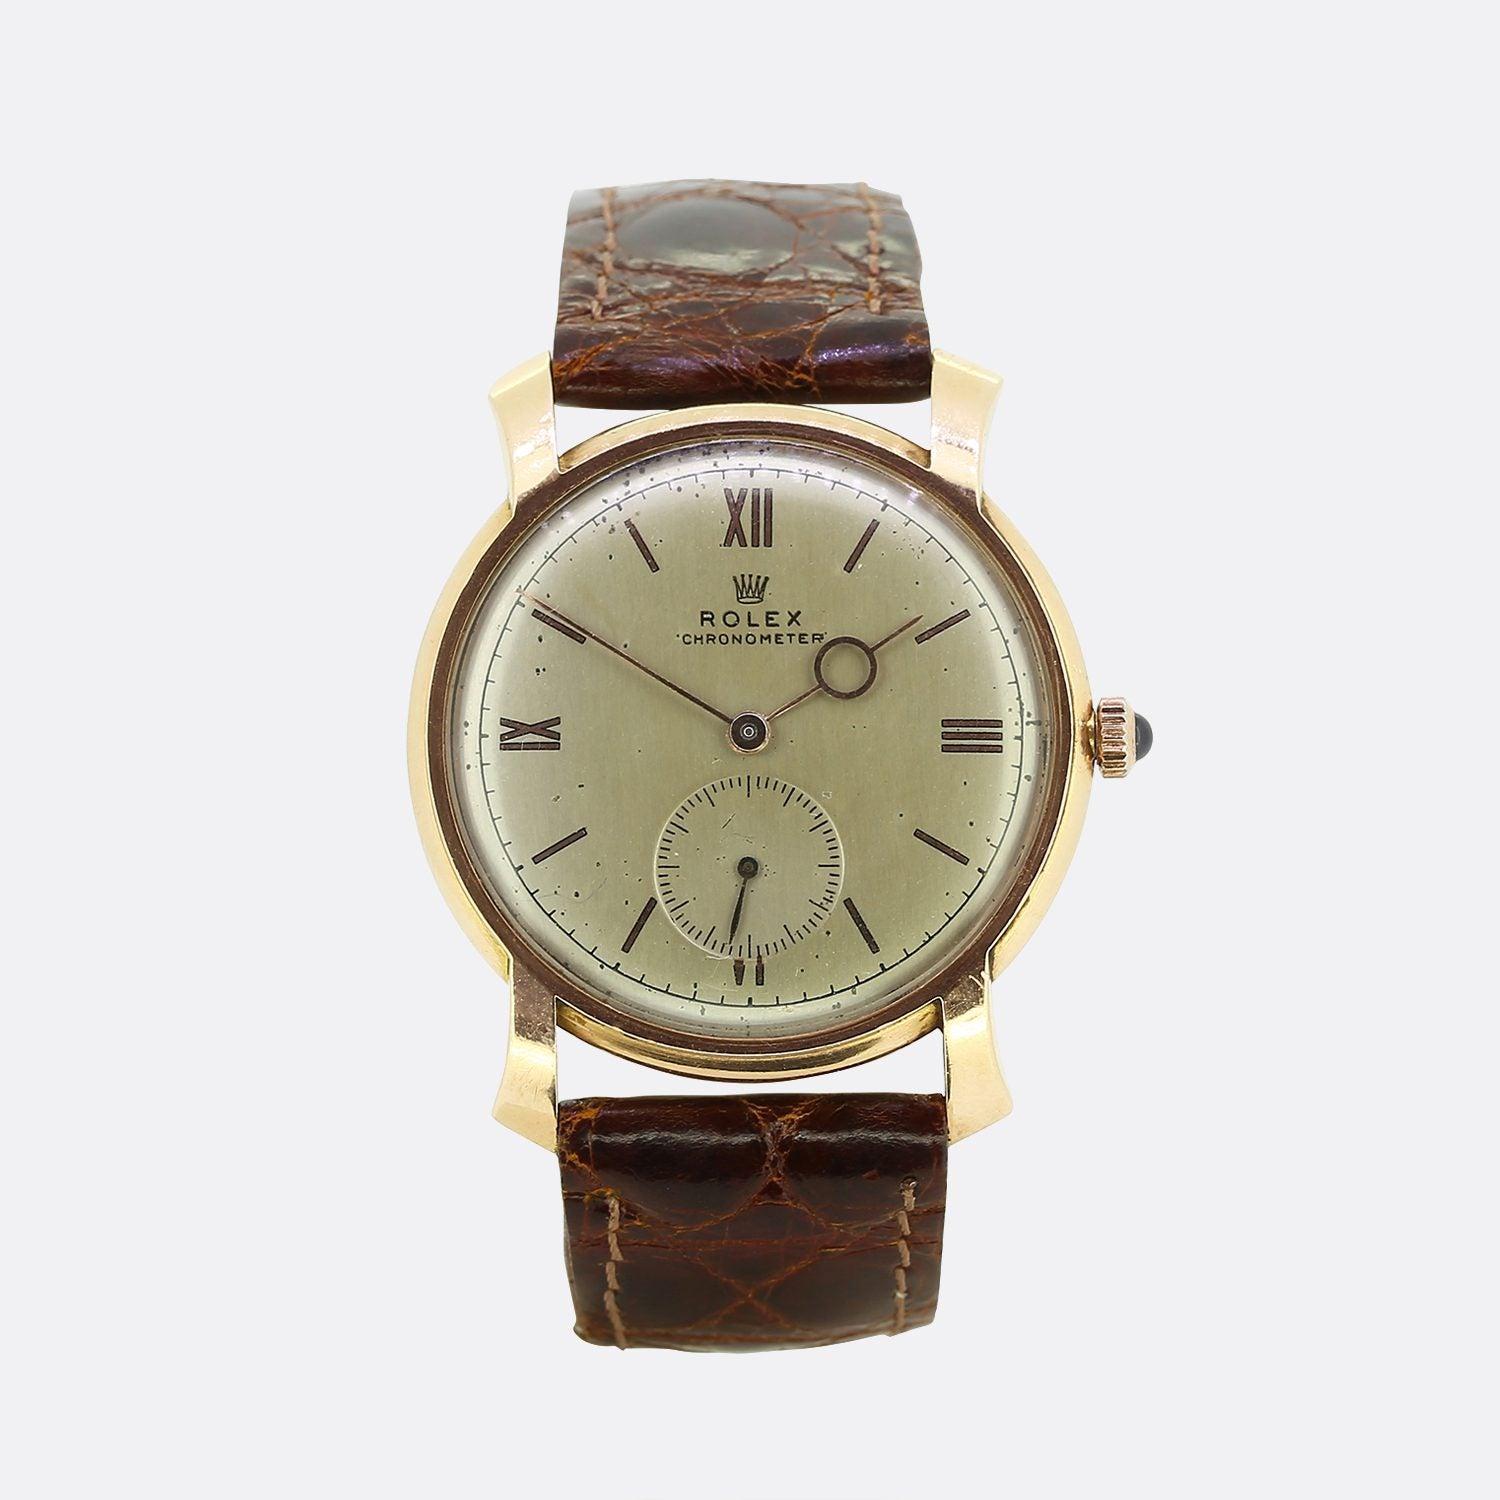 Il s'agit d'une montre Rolex Chronomètre unisexe en or jaune 14ct des années 1940. Le cadran est de couleur blanc cassé, avec des aiguilles en or rose et des index en chiffres romains à 12, 3, 6 et 9 heures. La montre porte la signature 